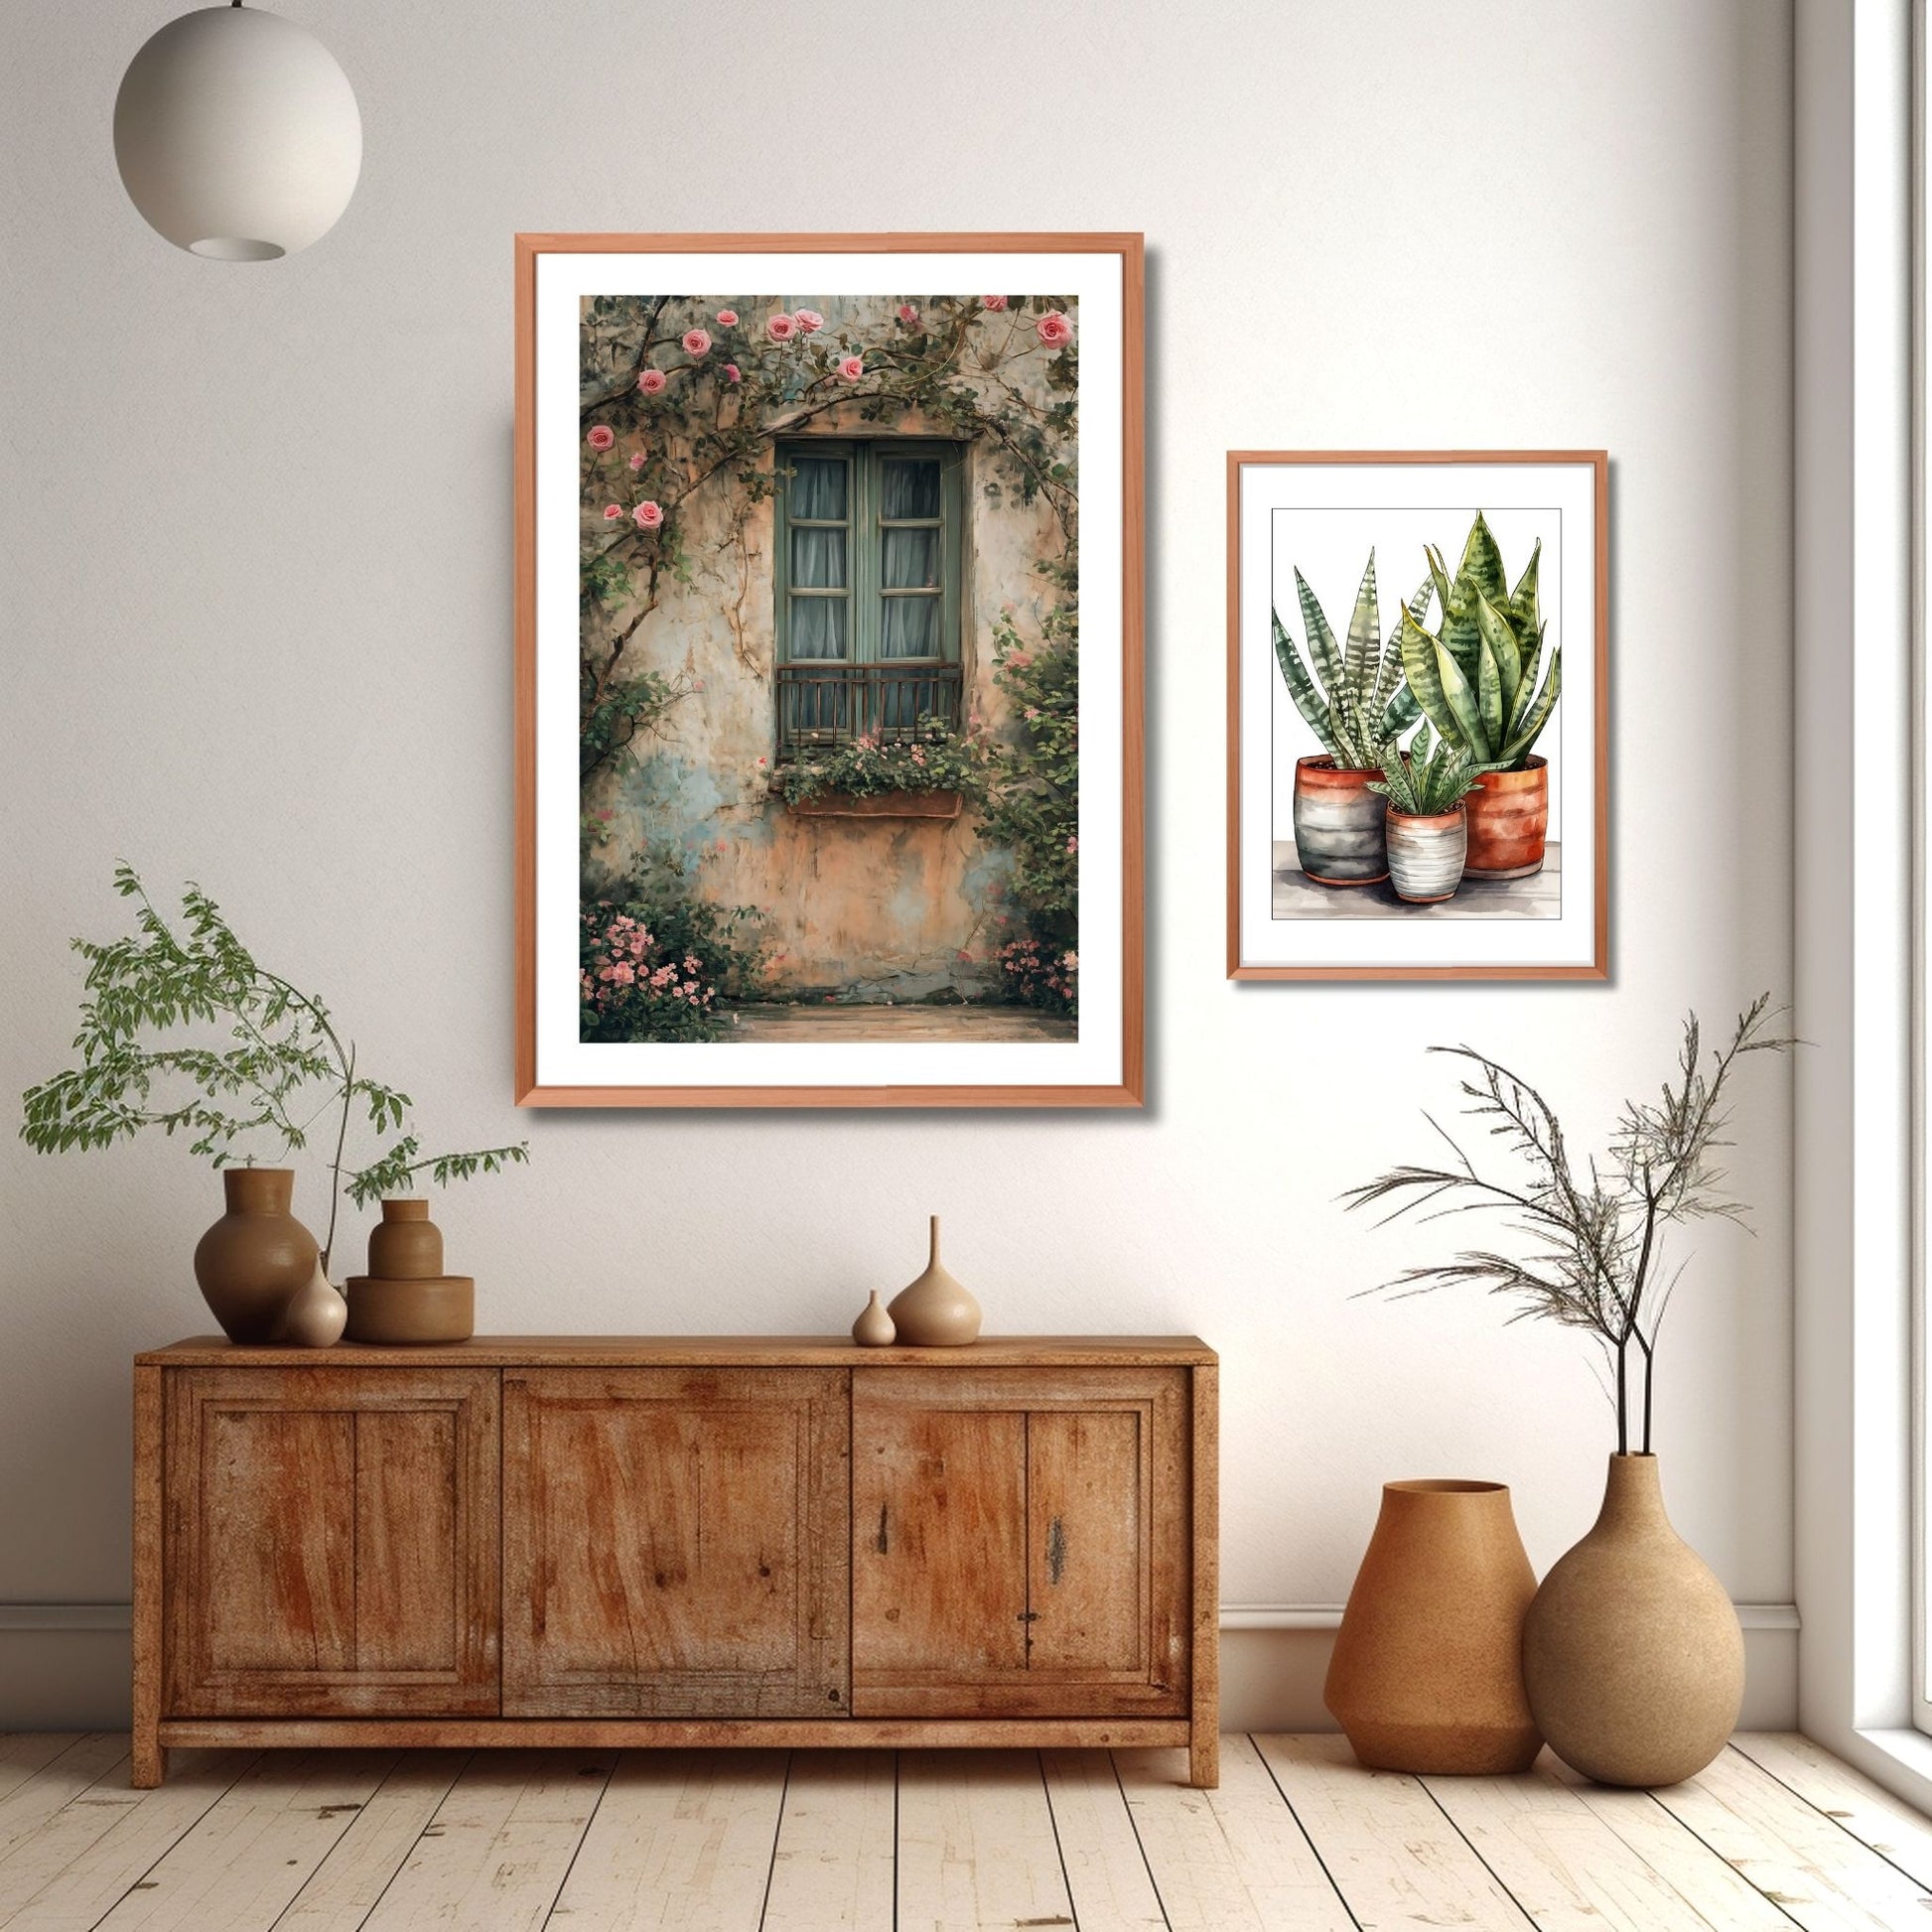 Fotografi av et vindu med grønne karmer på et gammelt hus. Foran vinduet henger en blomsterkasse og rundt vinduet vokser et rosetre med rosa blomster. Illustrasjon viser foto i eikeramme på en vegg over et skap.